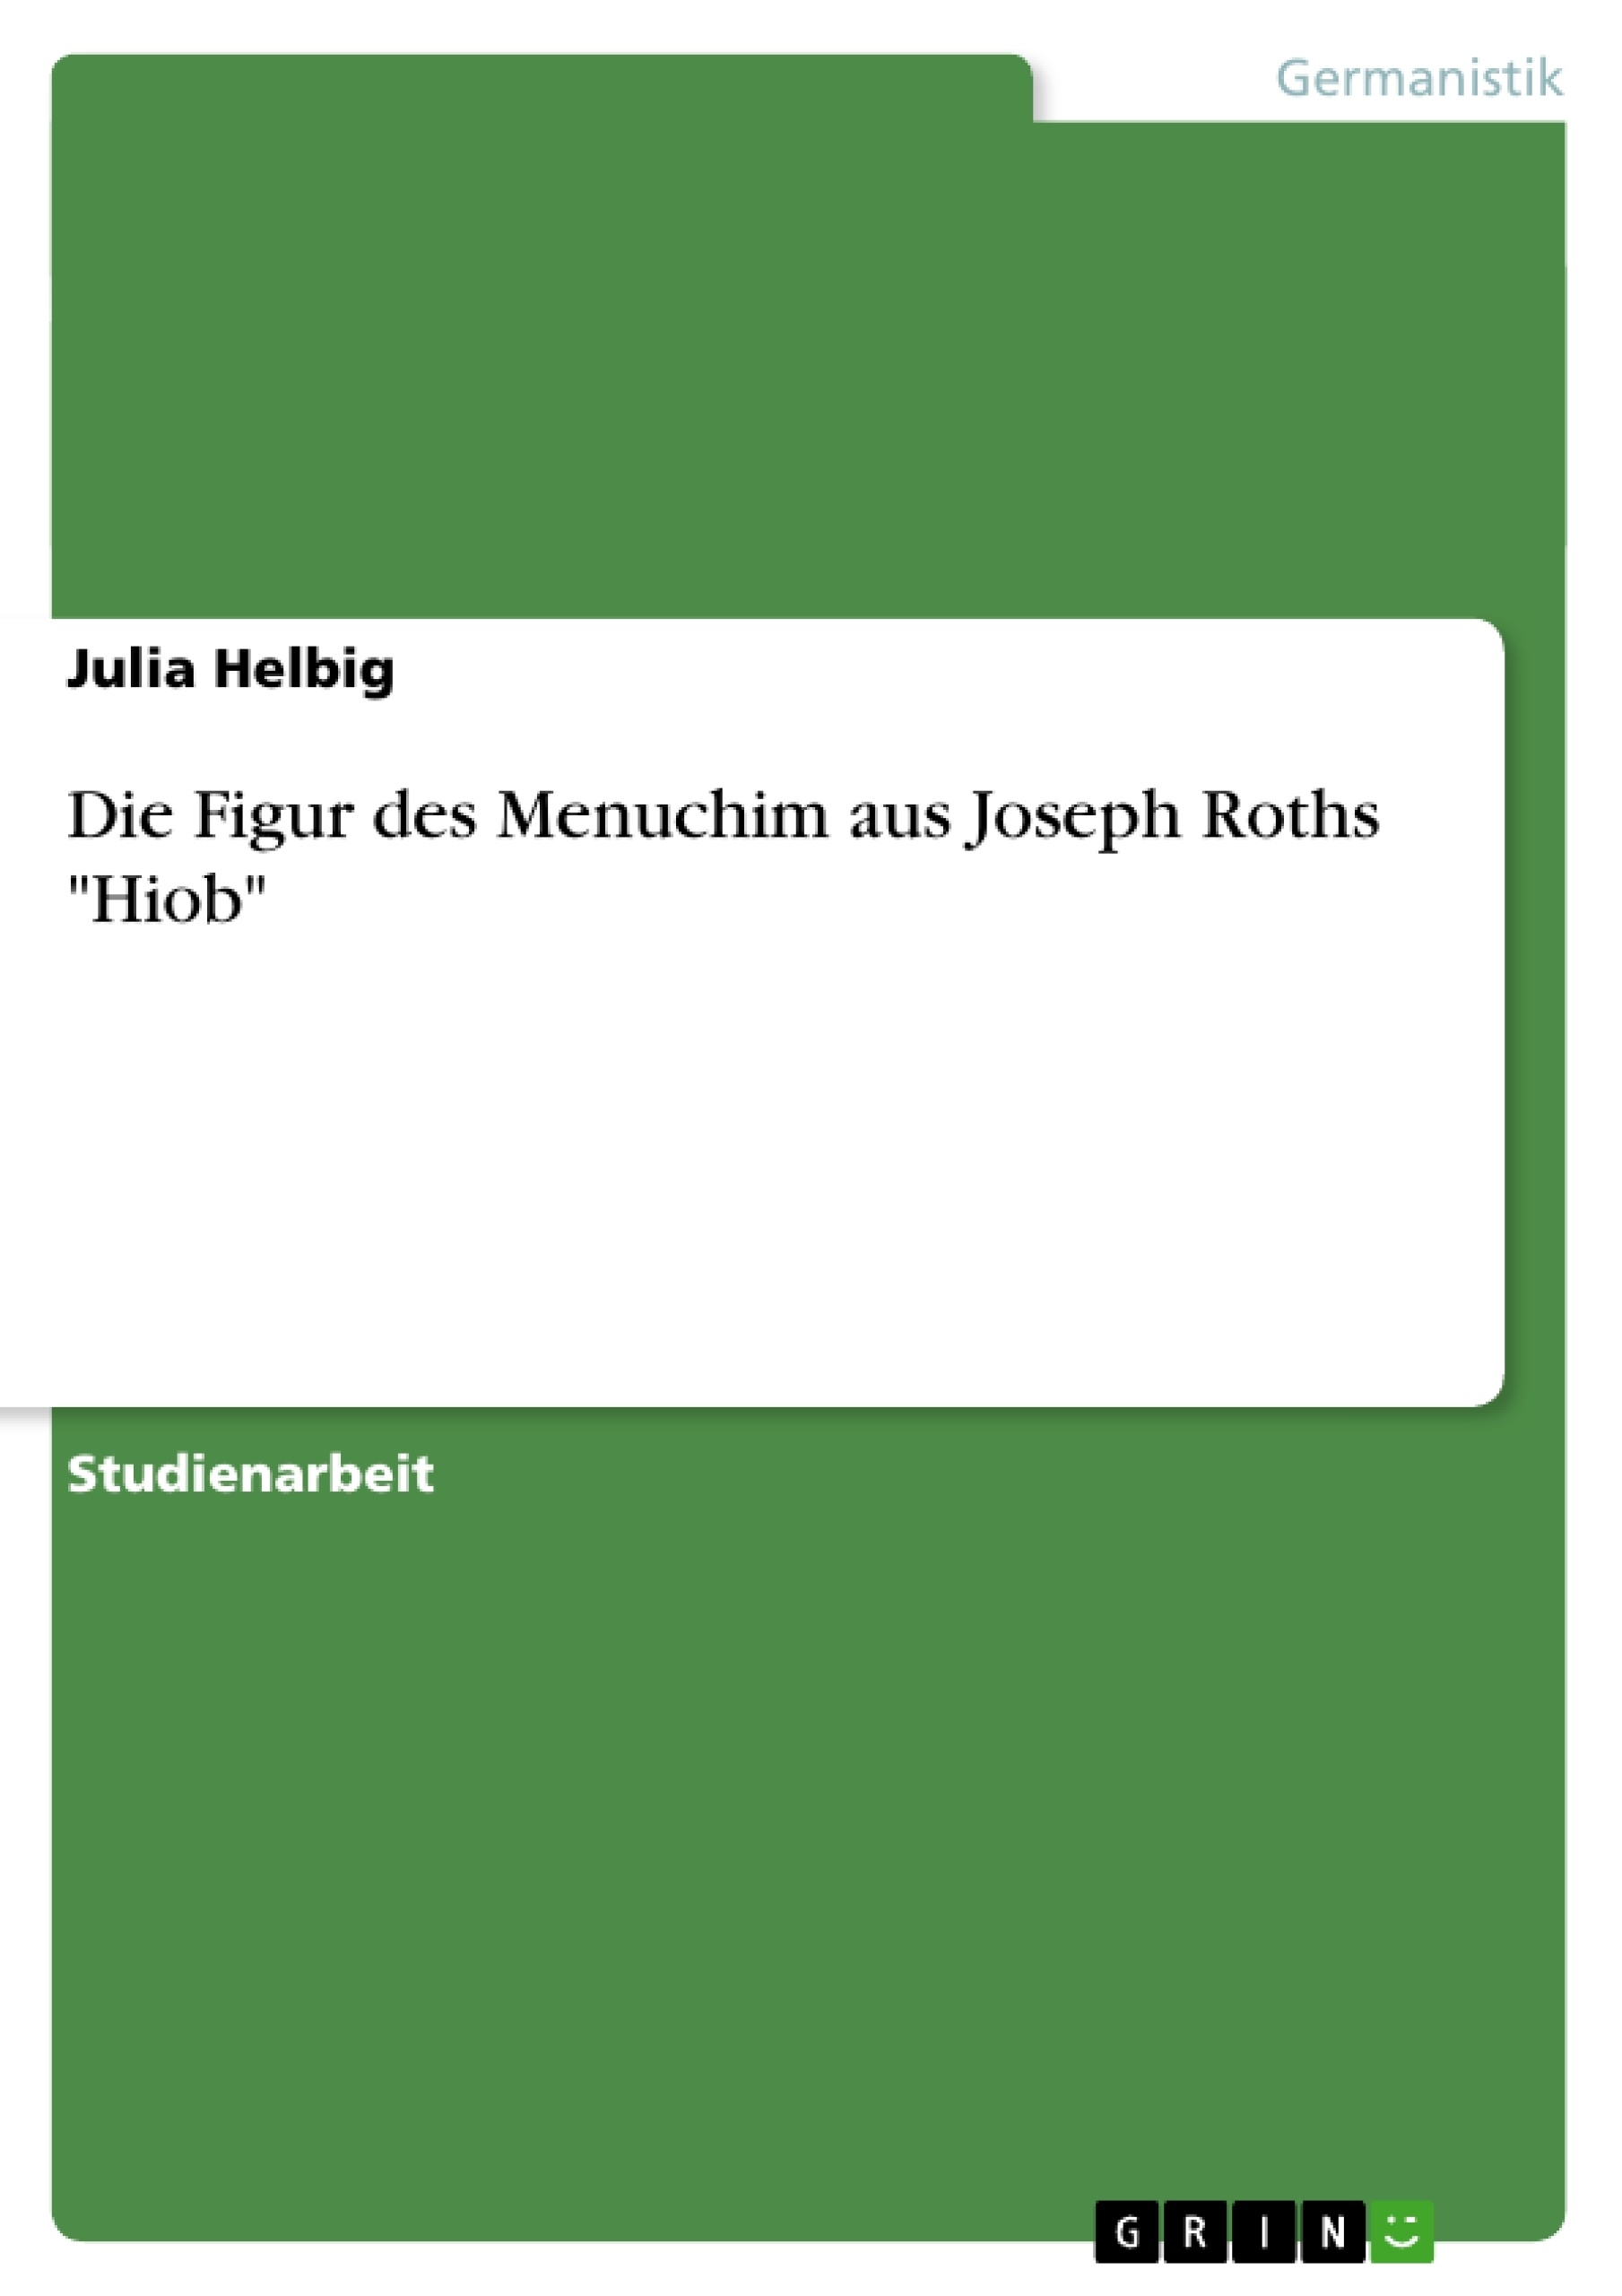 Titre: Die Figur des Menuchim aus Joseph Roths "Hiob"